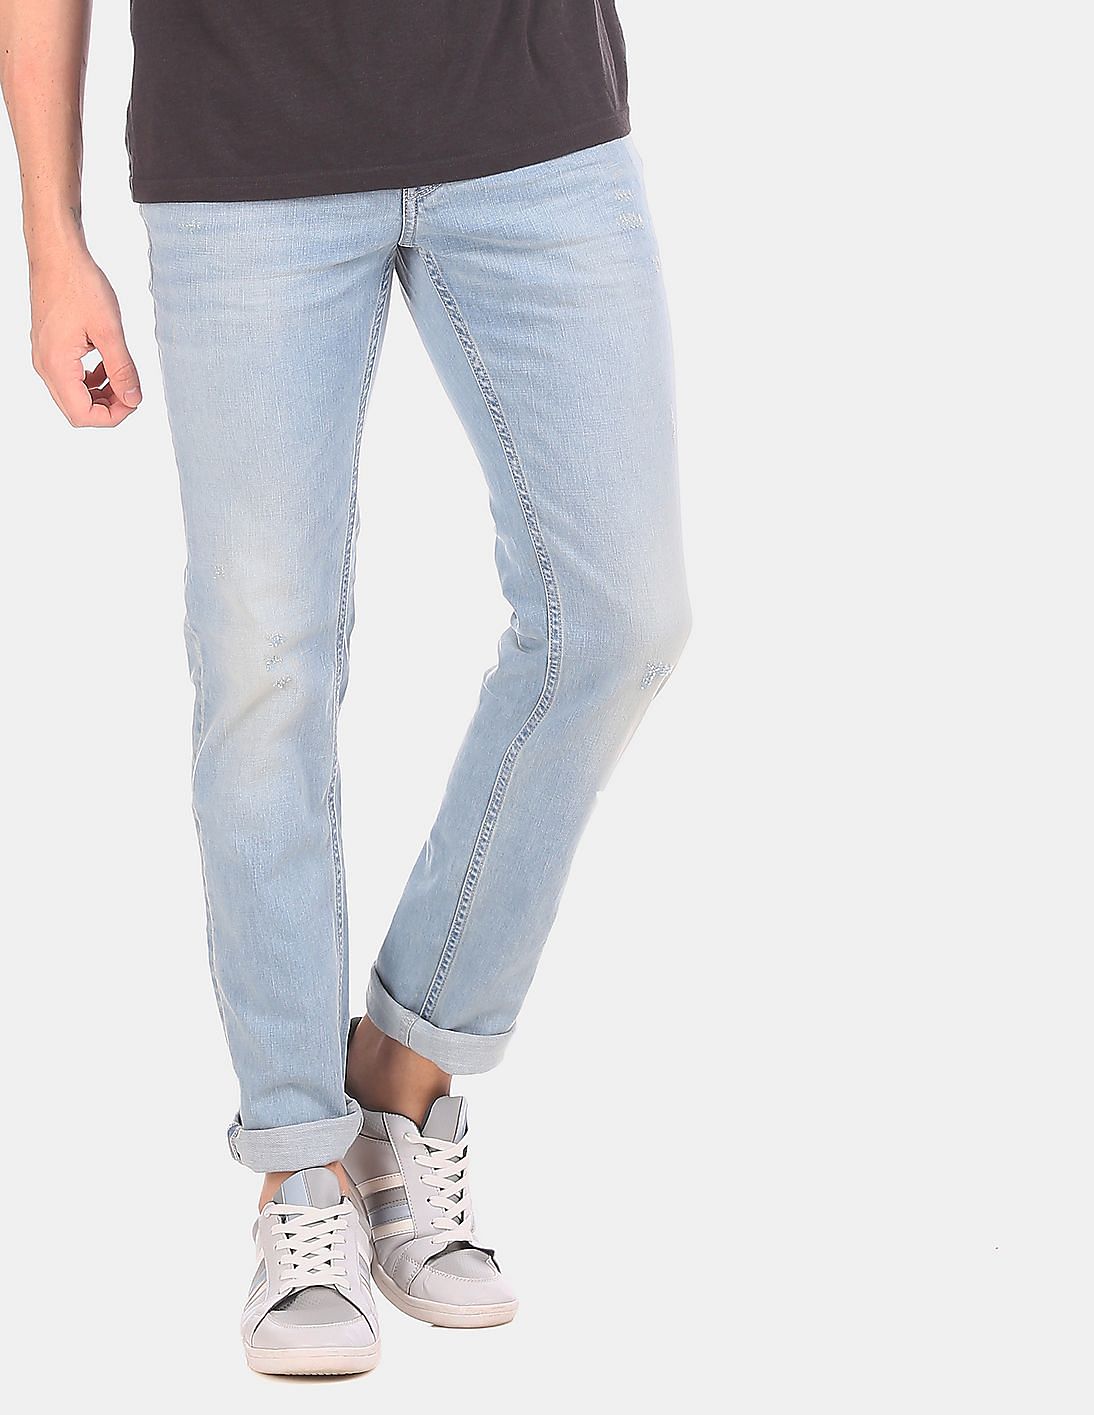 levi's 590 plus size jeans